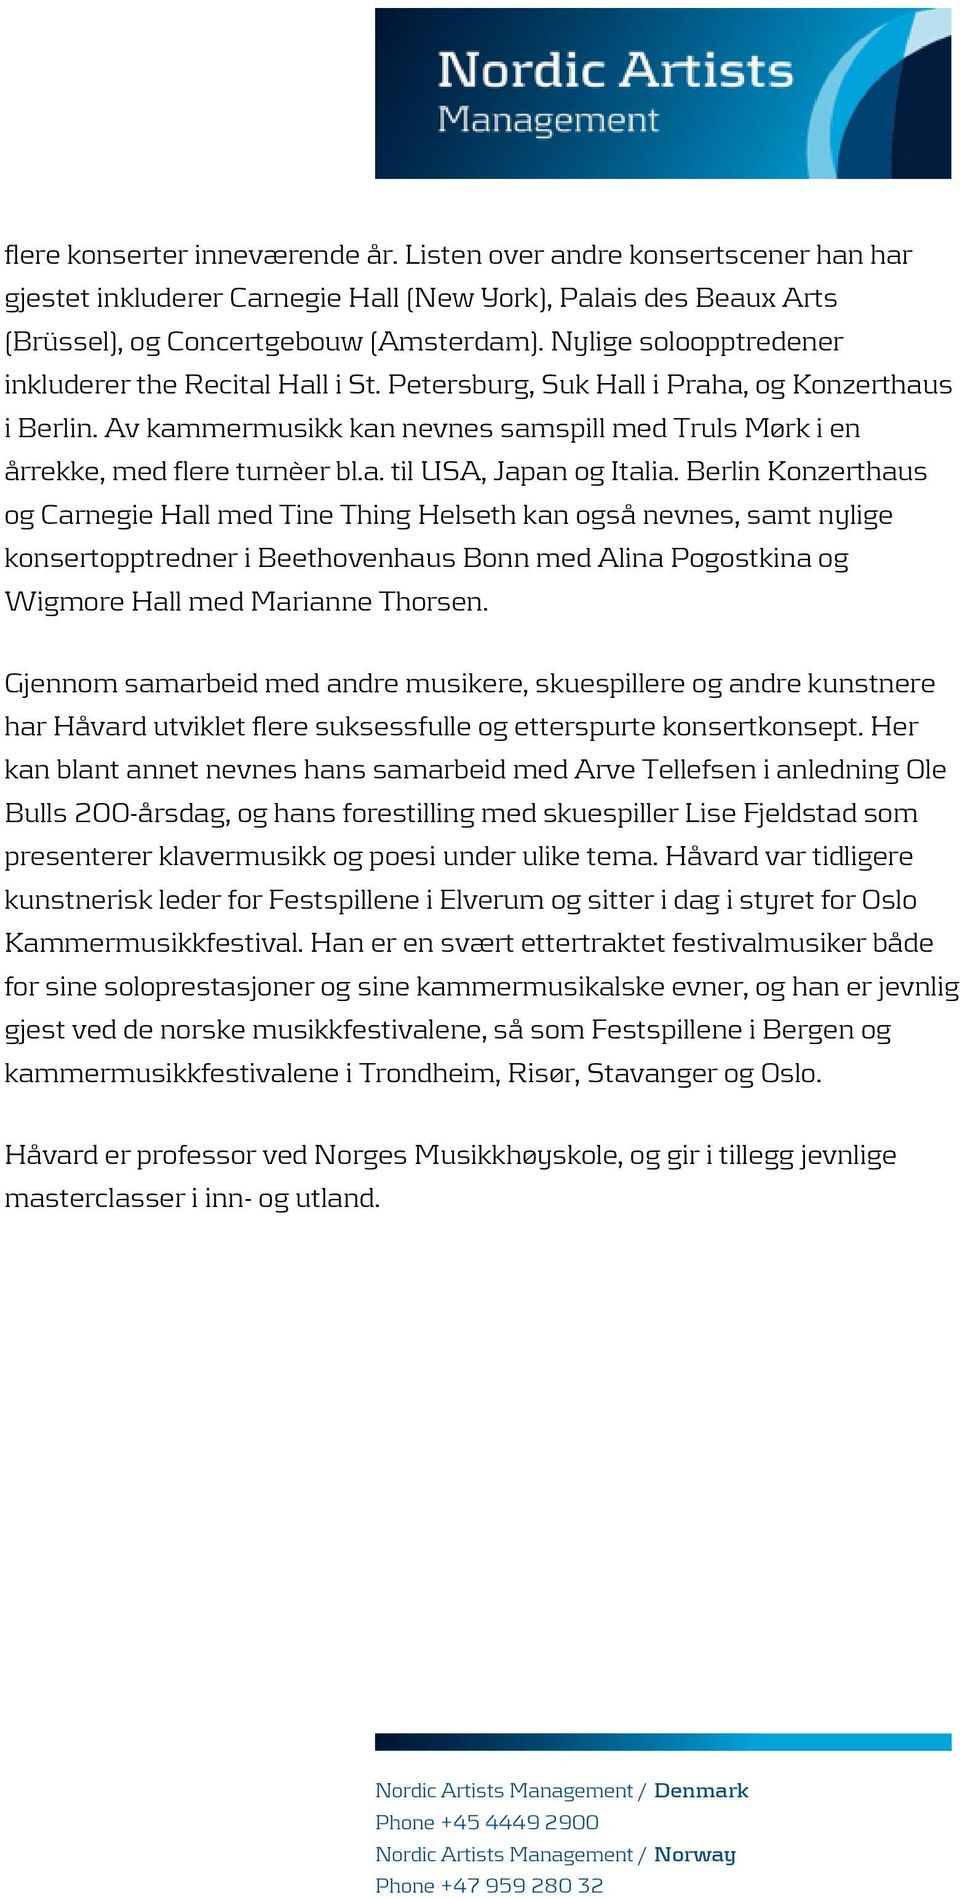 Berlin Konzerthaus og Carnegie Hall med Tine Thing Helseth kan også nevnes, samt nylige konsertopptredner i Beethovenhaus Bonn med Alina Pogostkina og Wigmore Hall med Marianne Thorsen.